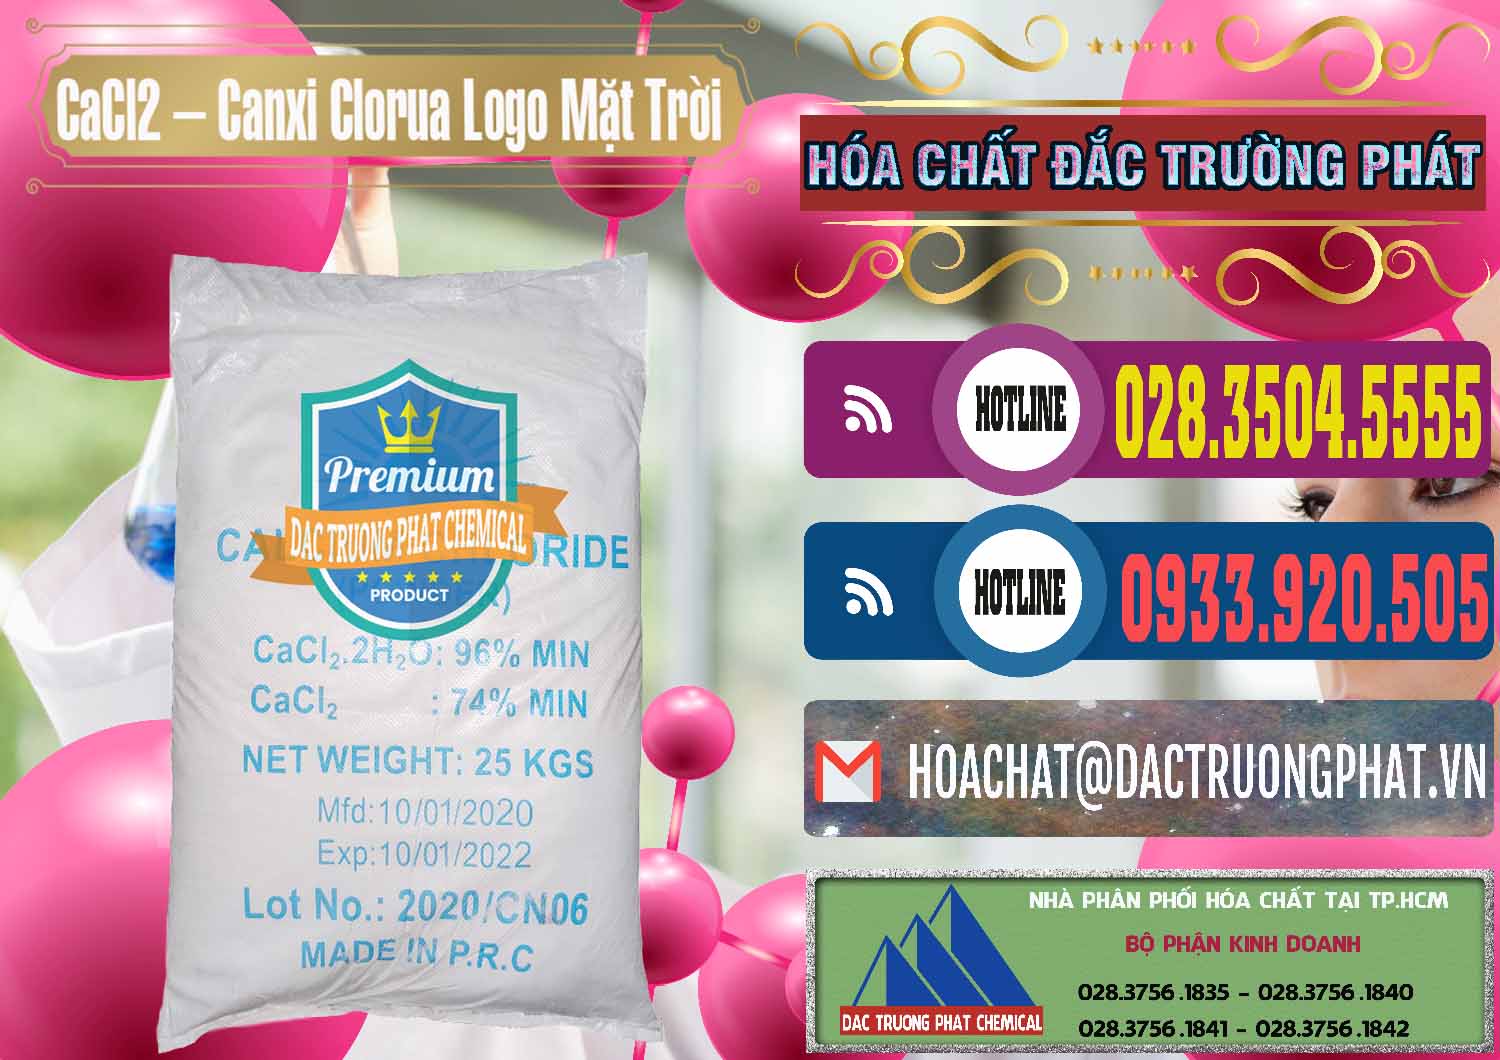 Nơi chuyên bán _ phân phối CaCl2 – Canxi Clorua 96% Logo Mặt Trời Trung Quốc China - 0041 - Công ty chuyên cung cấp - kinh doanh hóa chất tại TP.HCM - muabanhoachat.com.vn